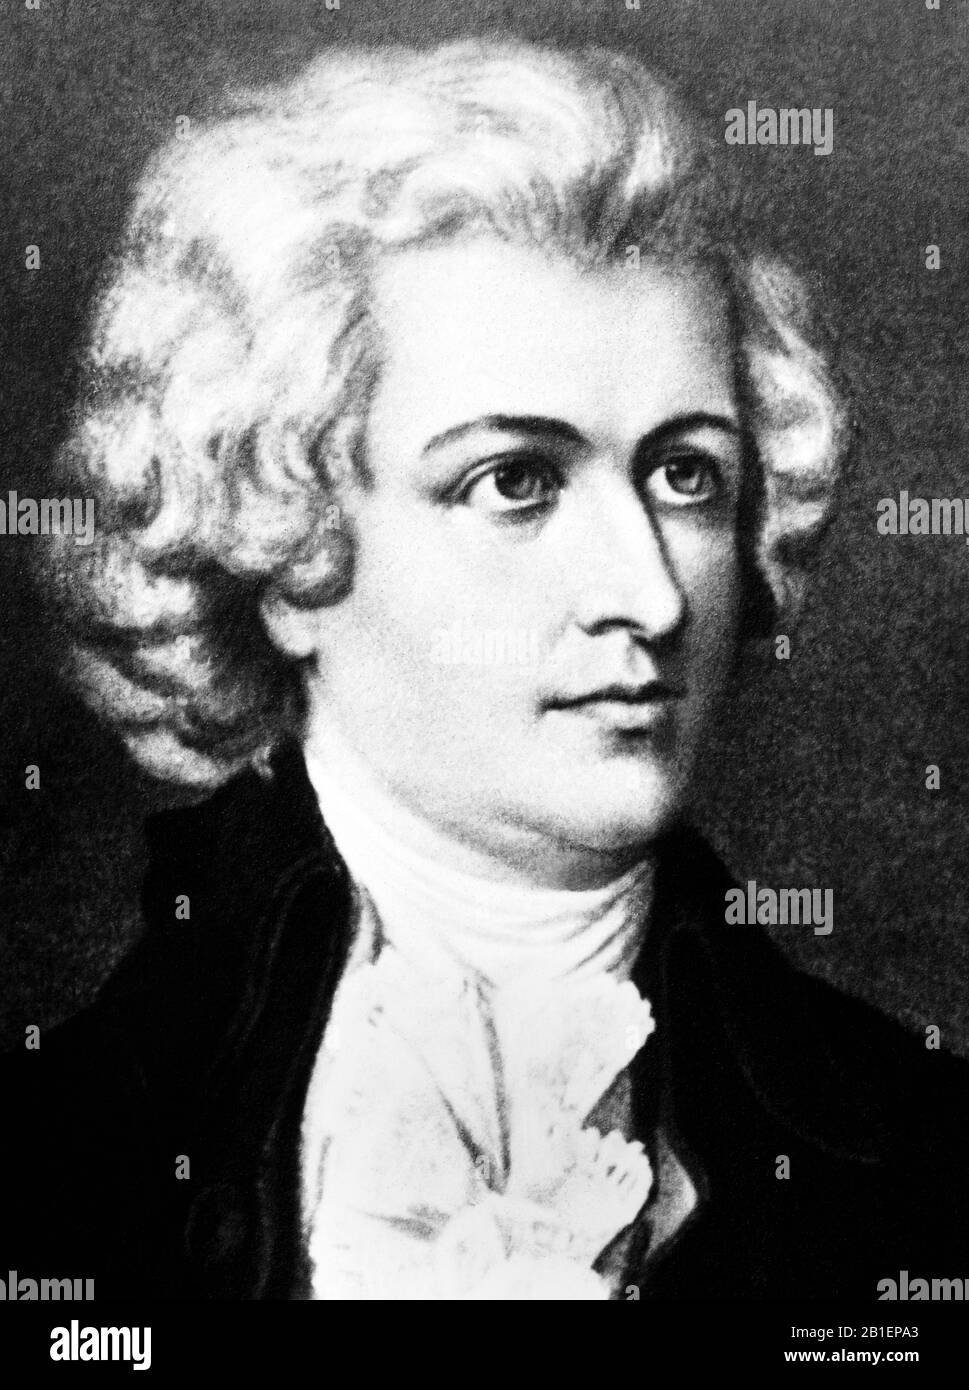 Vintage-Porträt des Komponisten Wolfgang Amadeus Mozart (1750-1730-1). Undatiertes Bild, das um 1920 von der Detroit Publishing Co. Veröffentlicht wurde Stockfoto